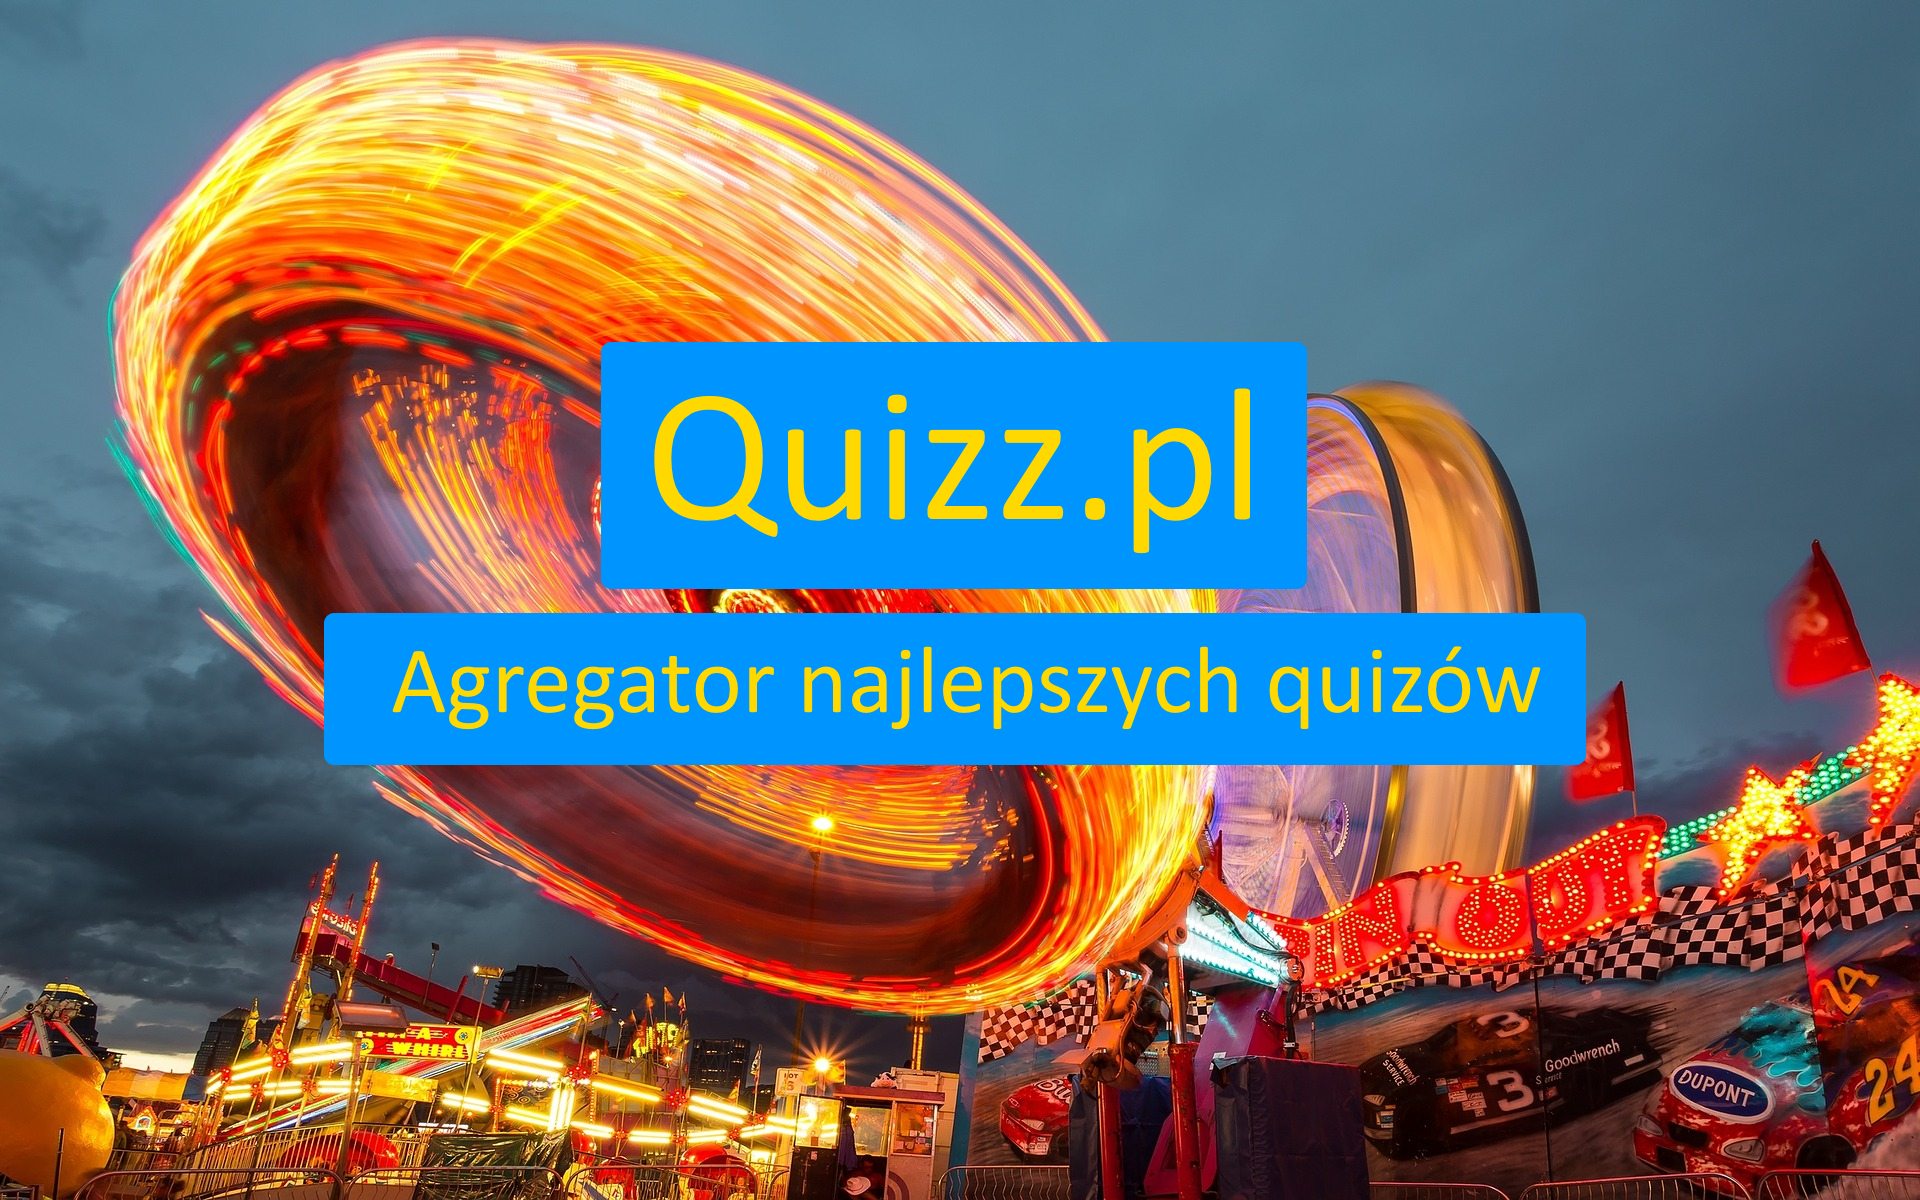 Nowe i bezpłatne quizy, testy wiedzy i sprawdziany - strona 2 - www.quizz.pl